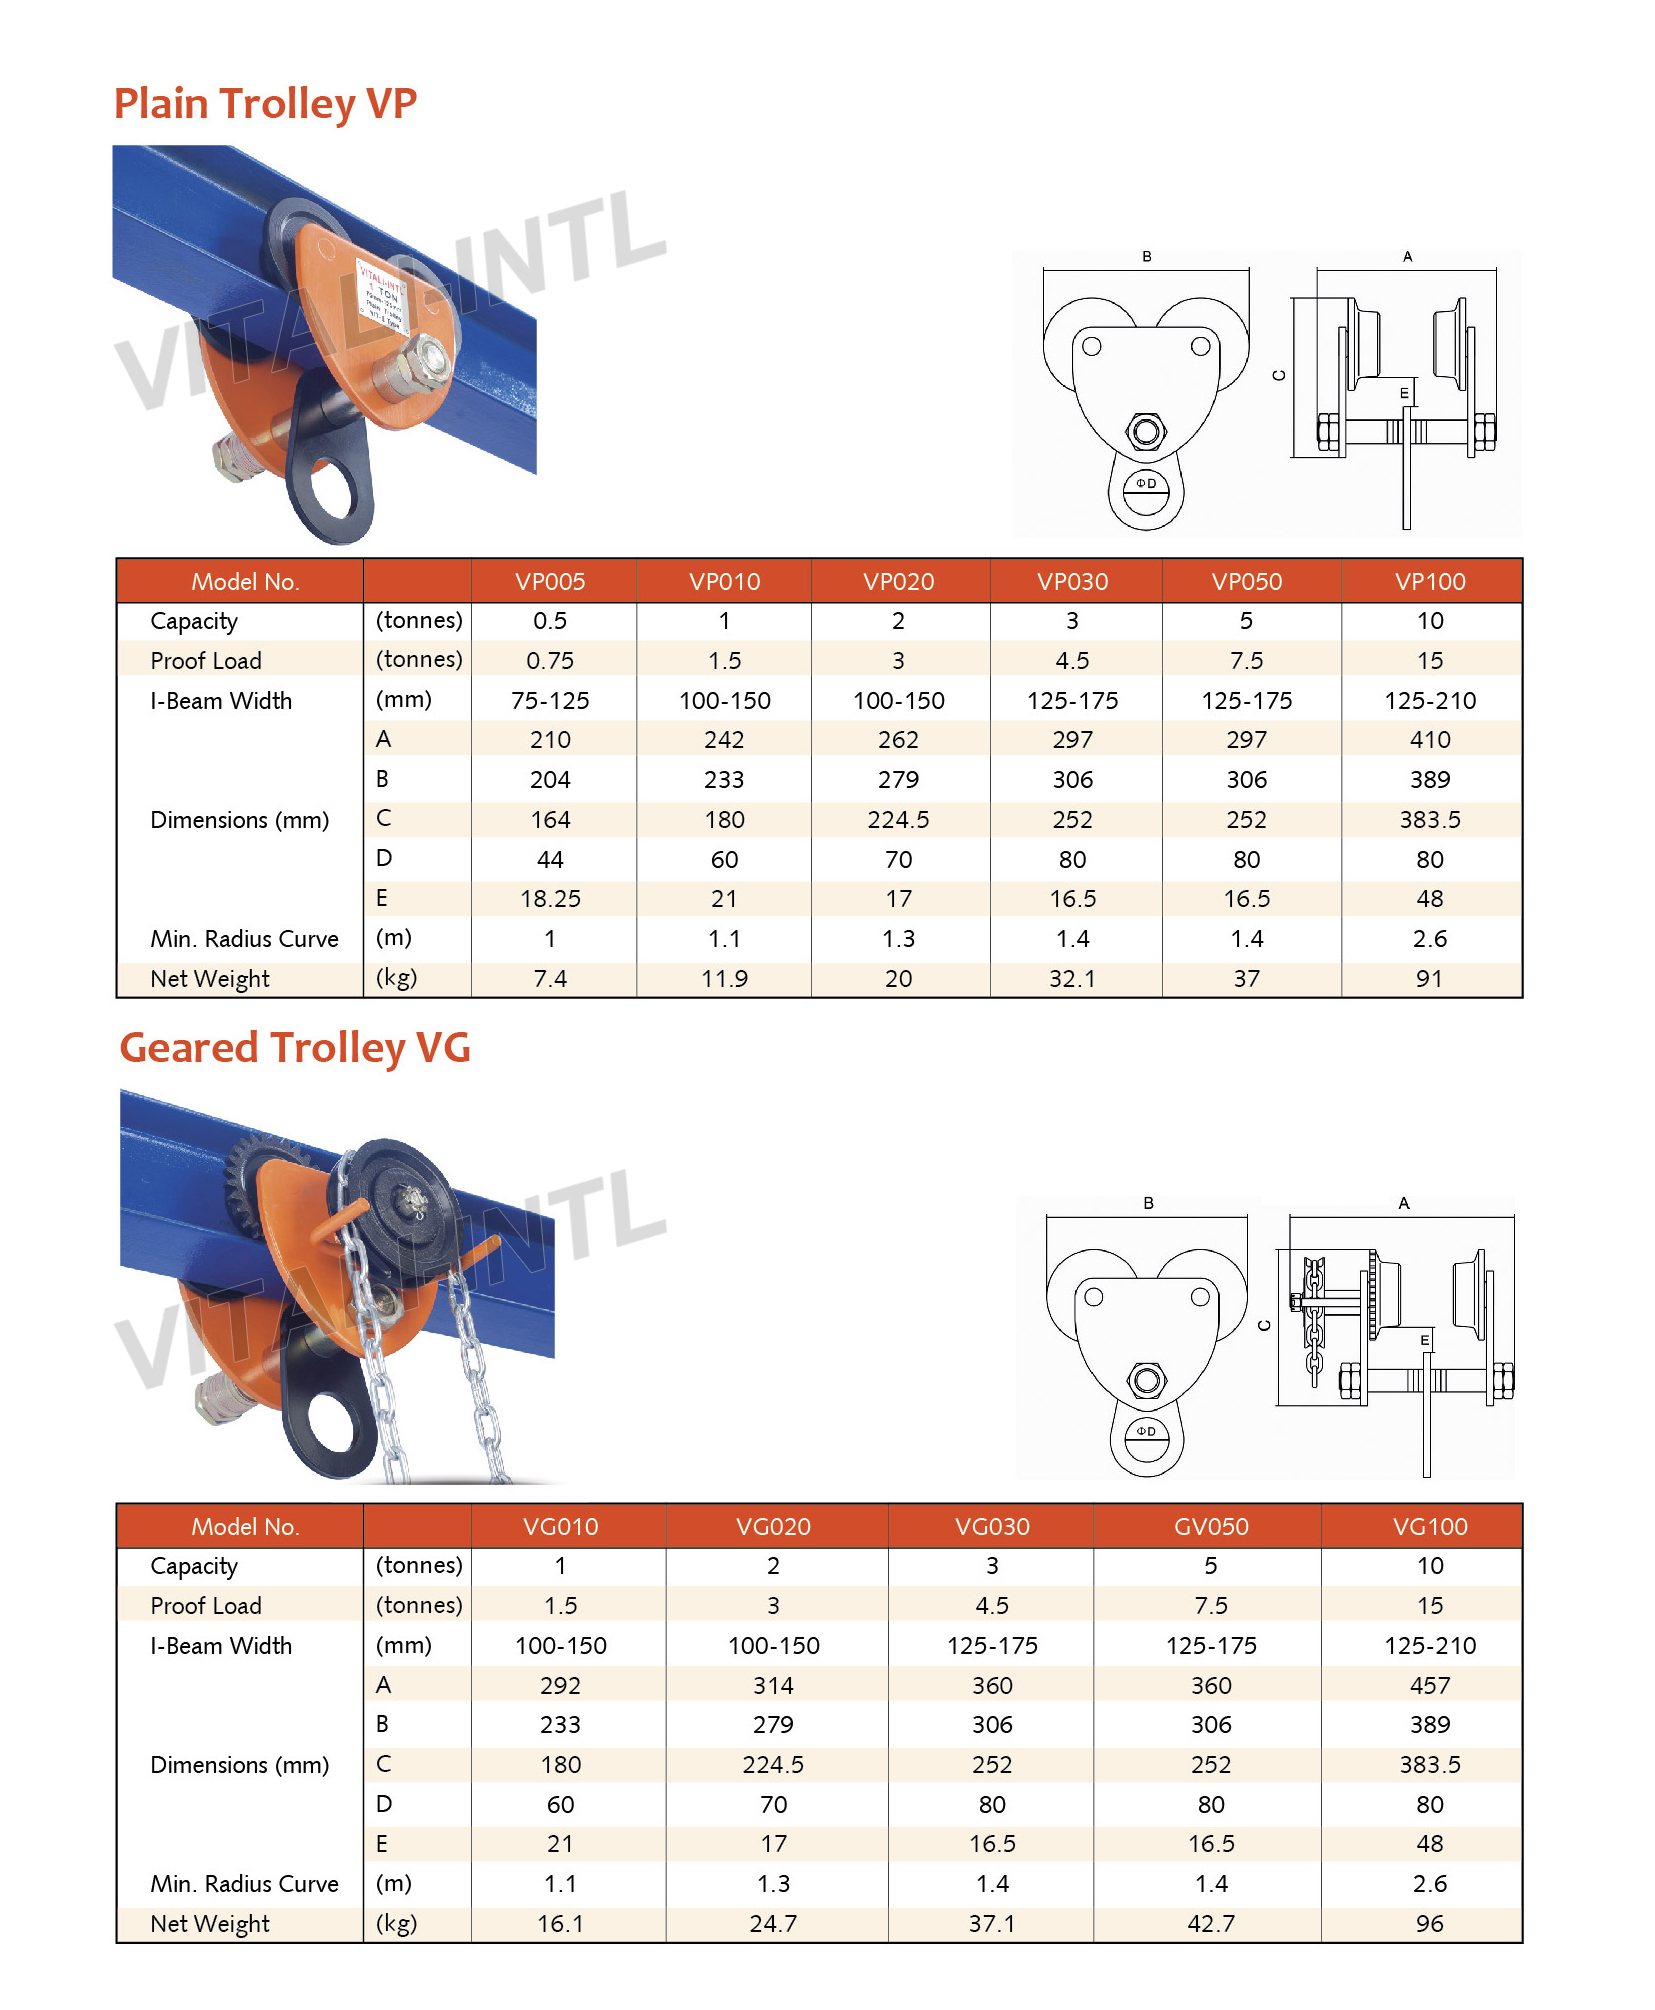 VITALI-INTL Plain Trolley VP-II Type & Geared Trolley VG-III Type Specifications